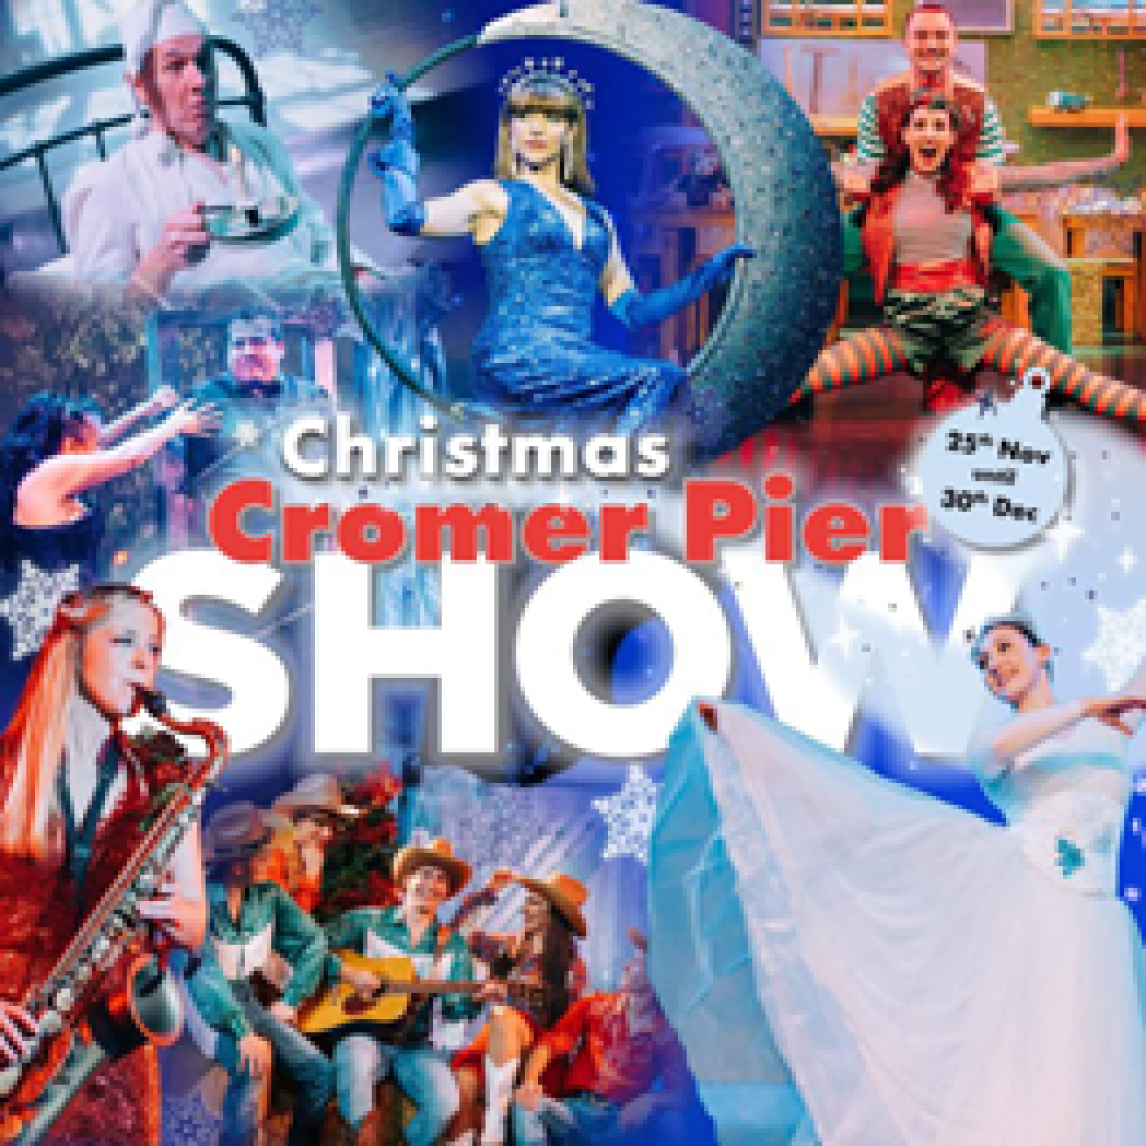 Christmas Cromer Pier Show